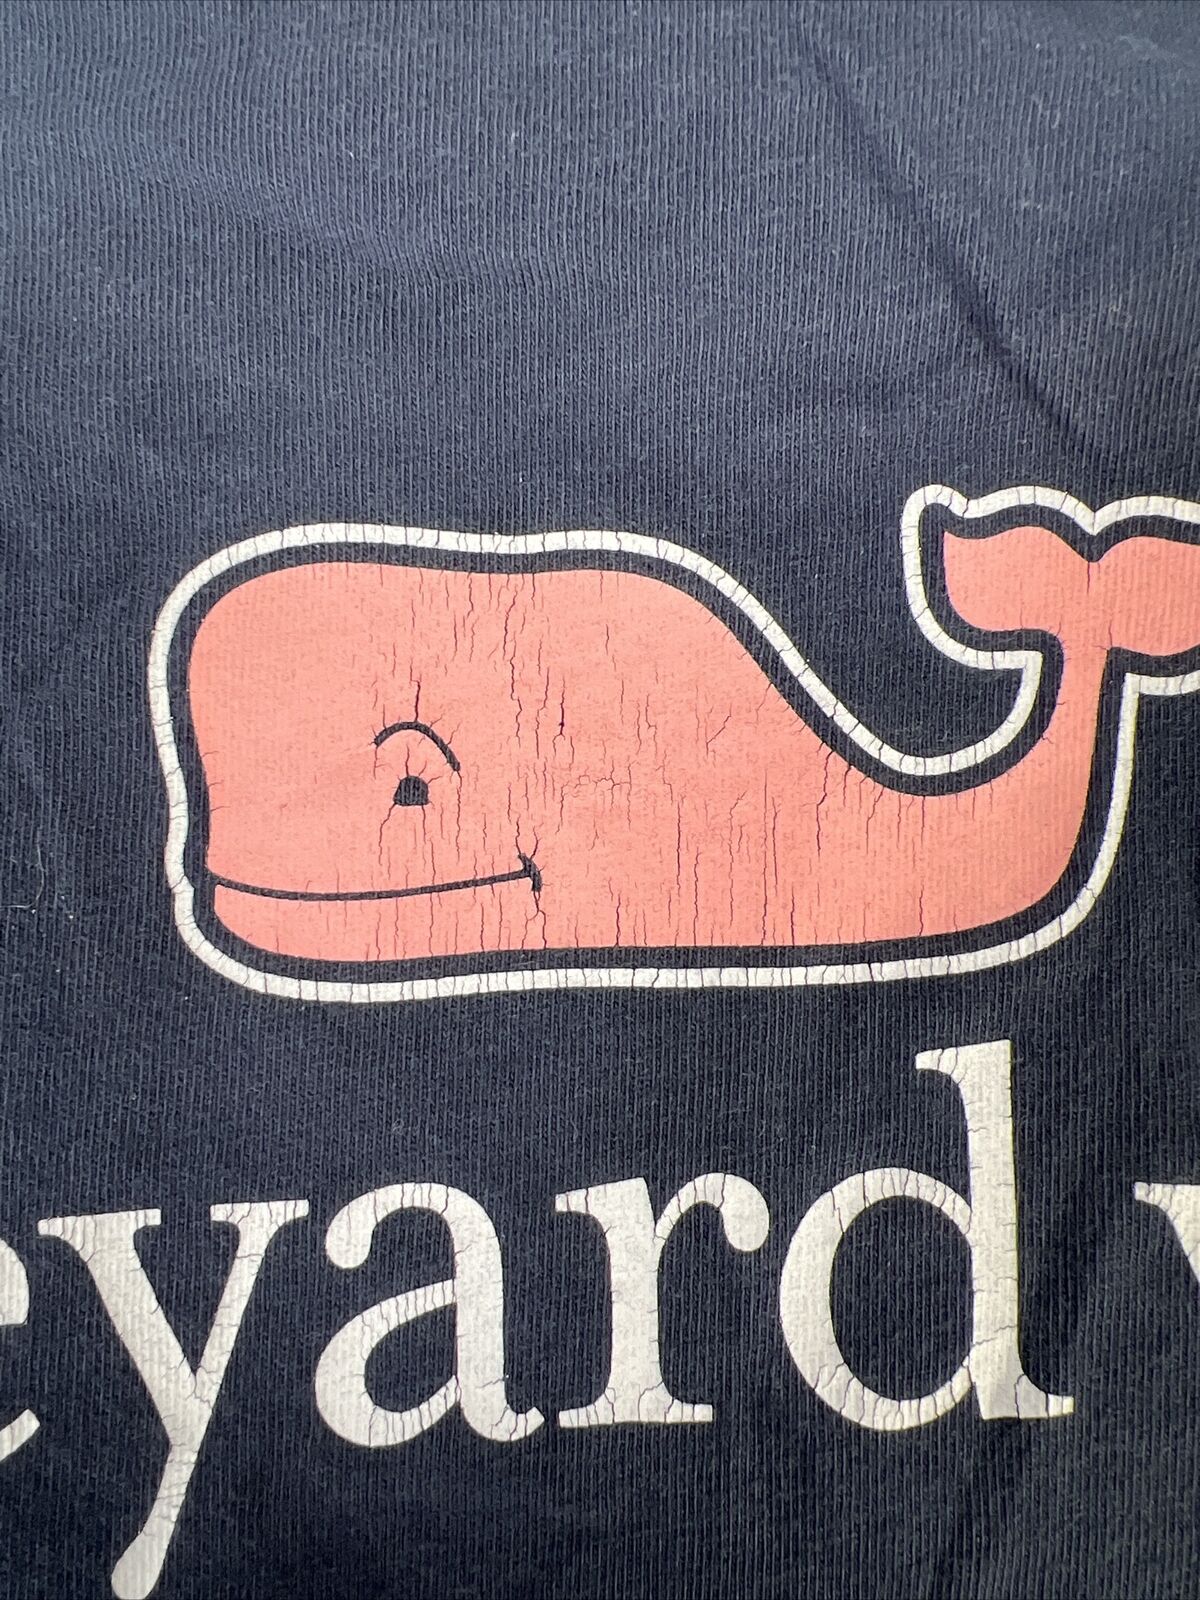 Vineyard Vines Men's Navy Blue Basic Whale T-Shirt - S